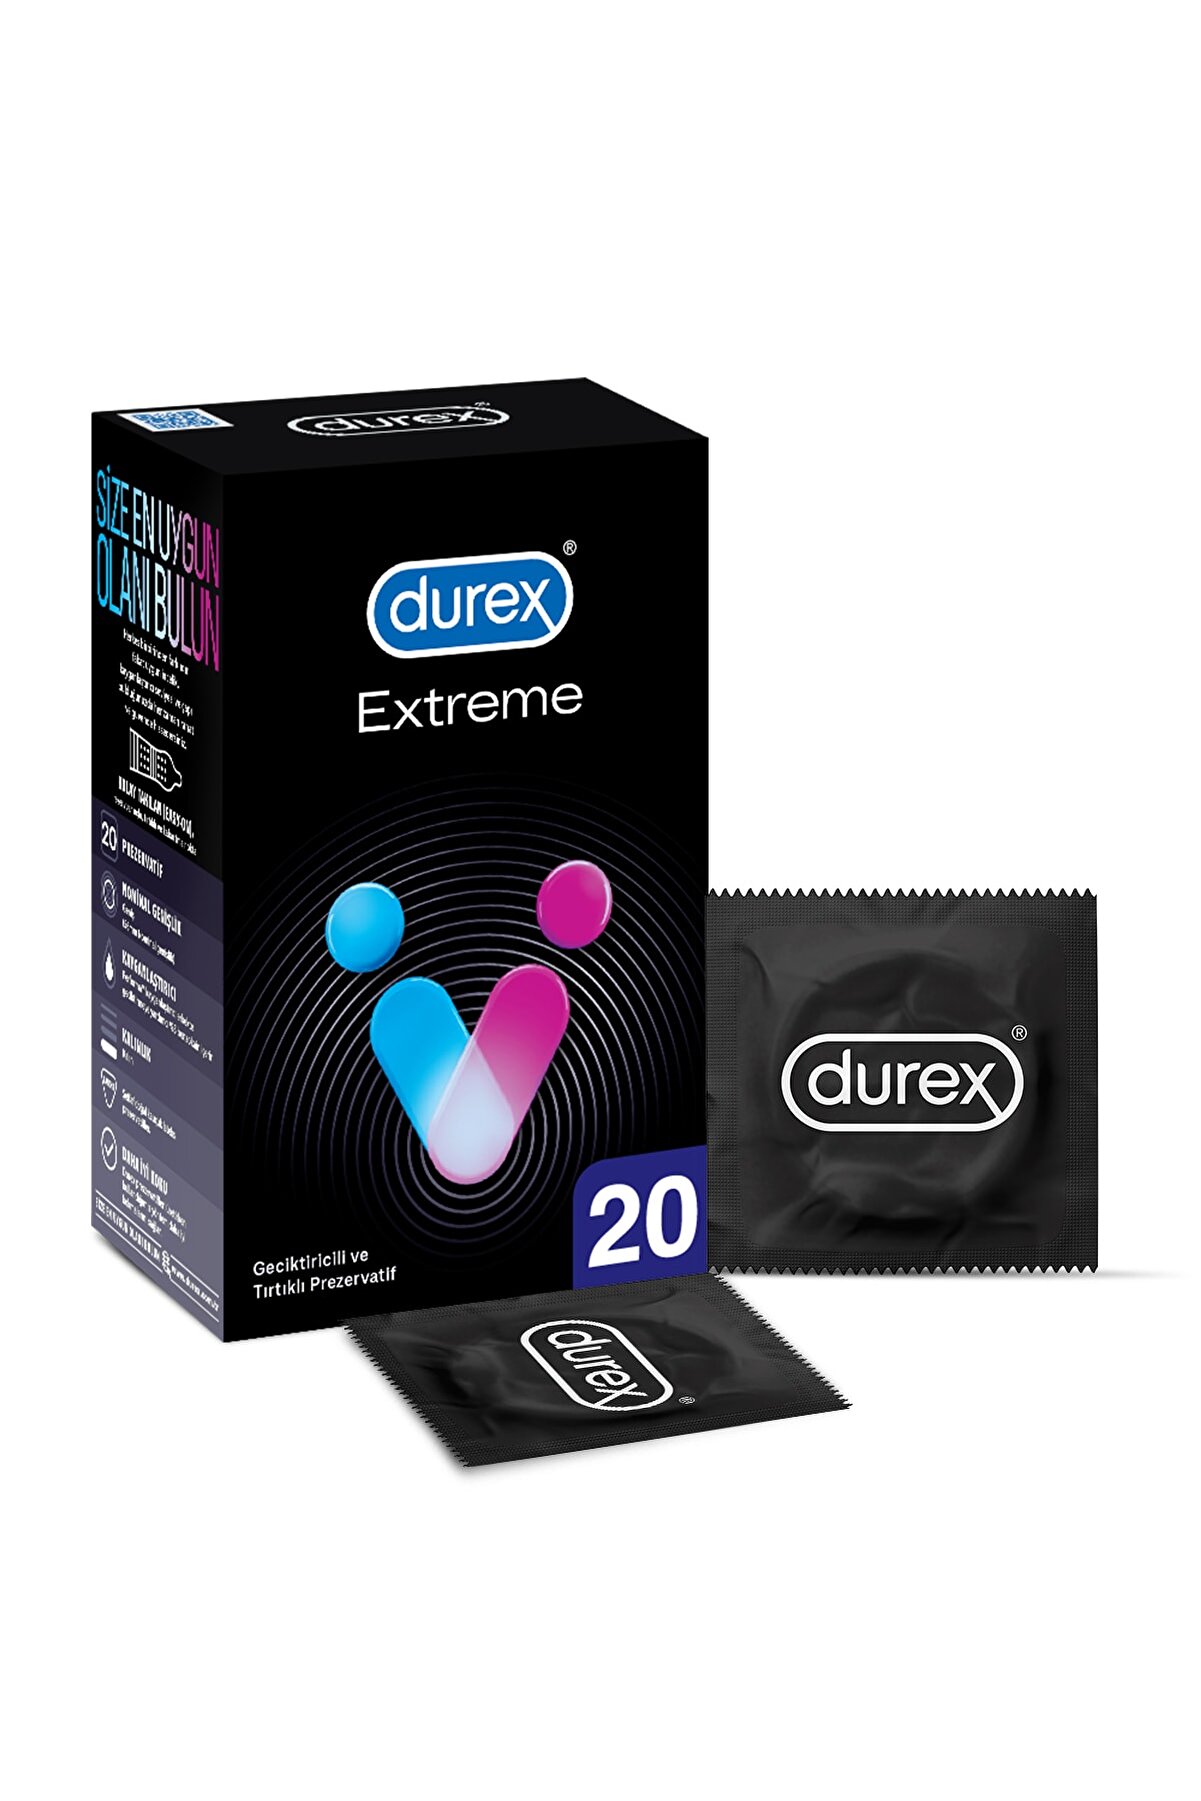 Durex Extreme 20'lı li ve Tırtıklı Prezervatif